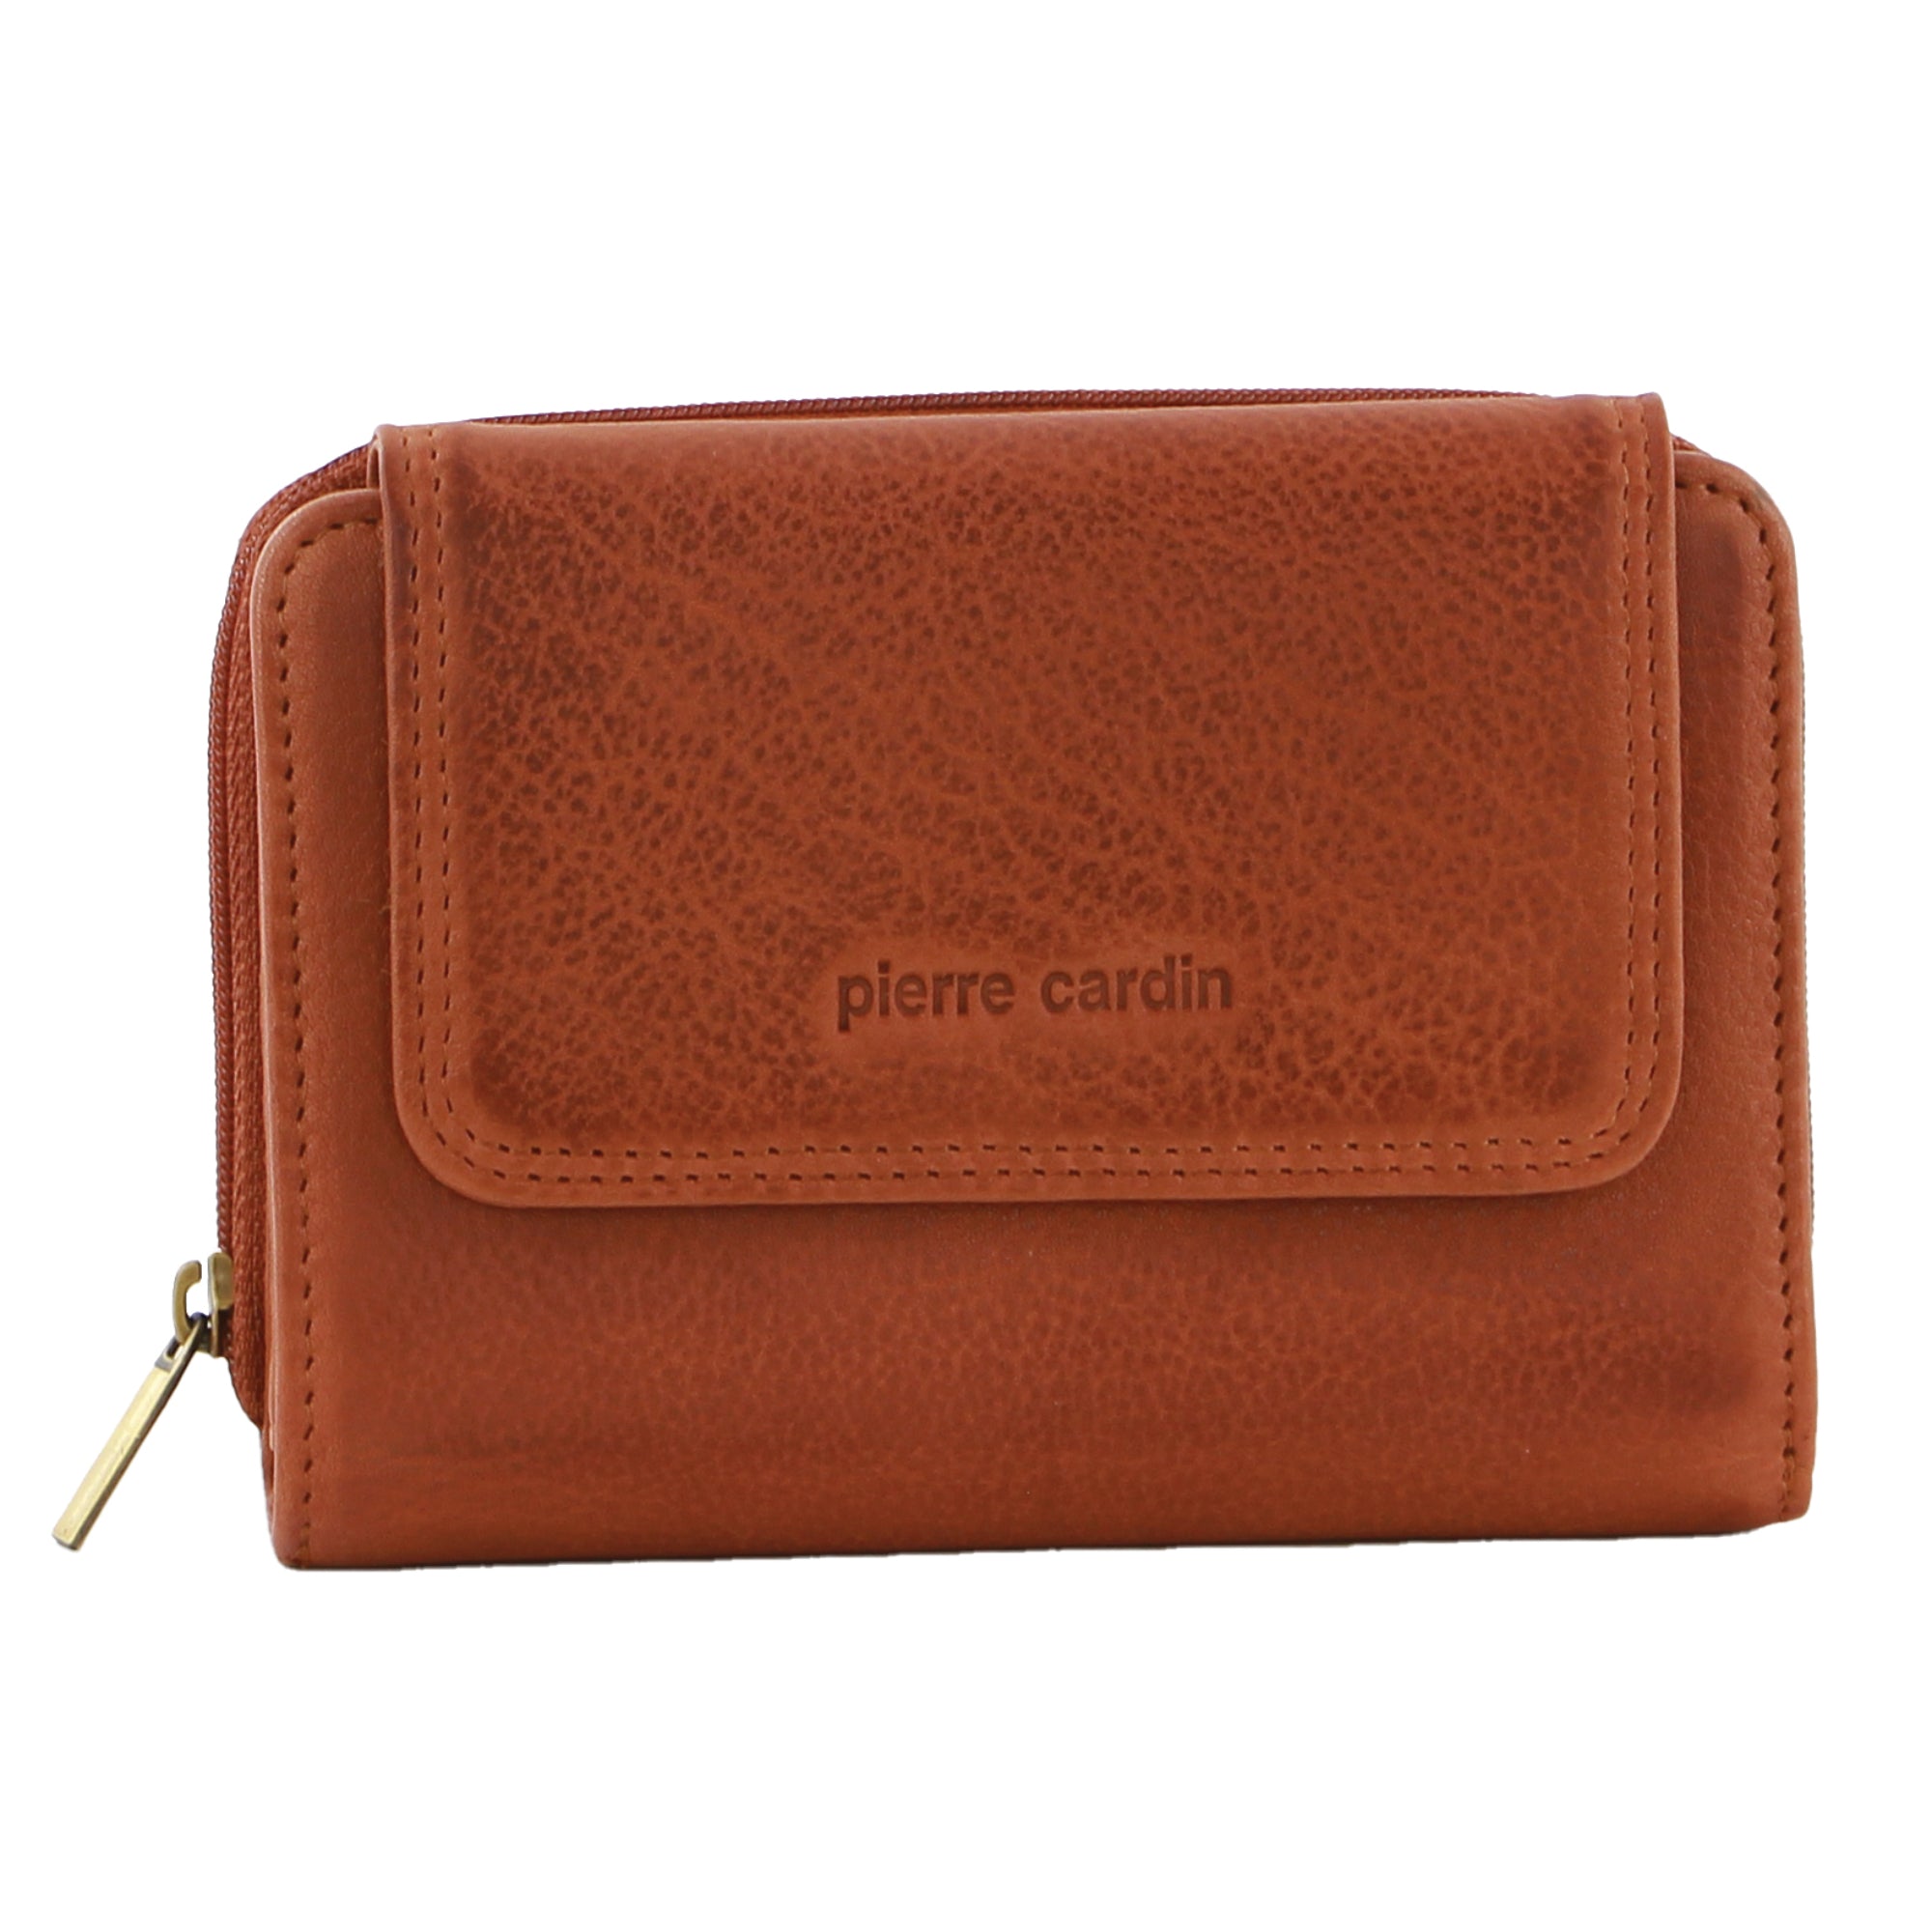 Pierre Cardin Women's Leather Compact Bi-Fold Tab Wallet in Cognac